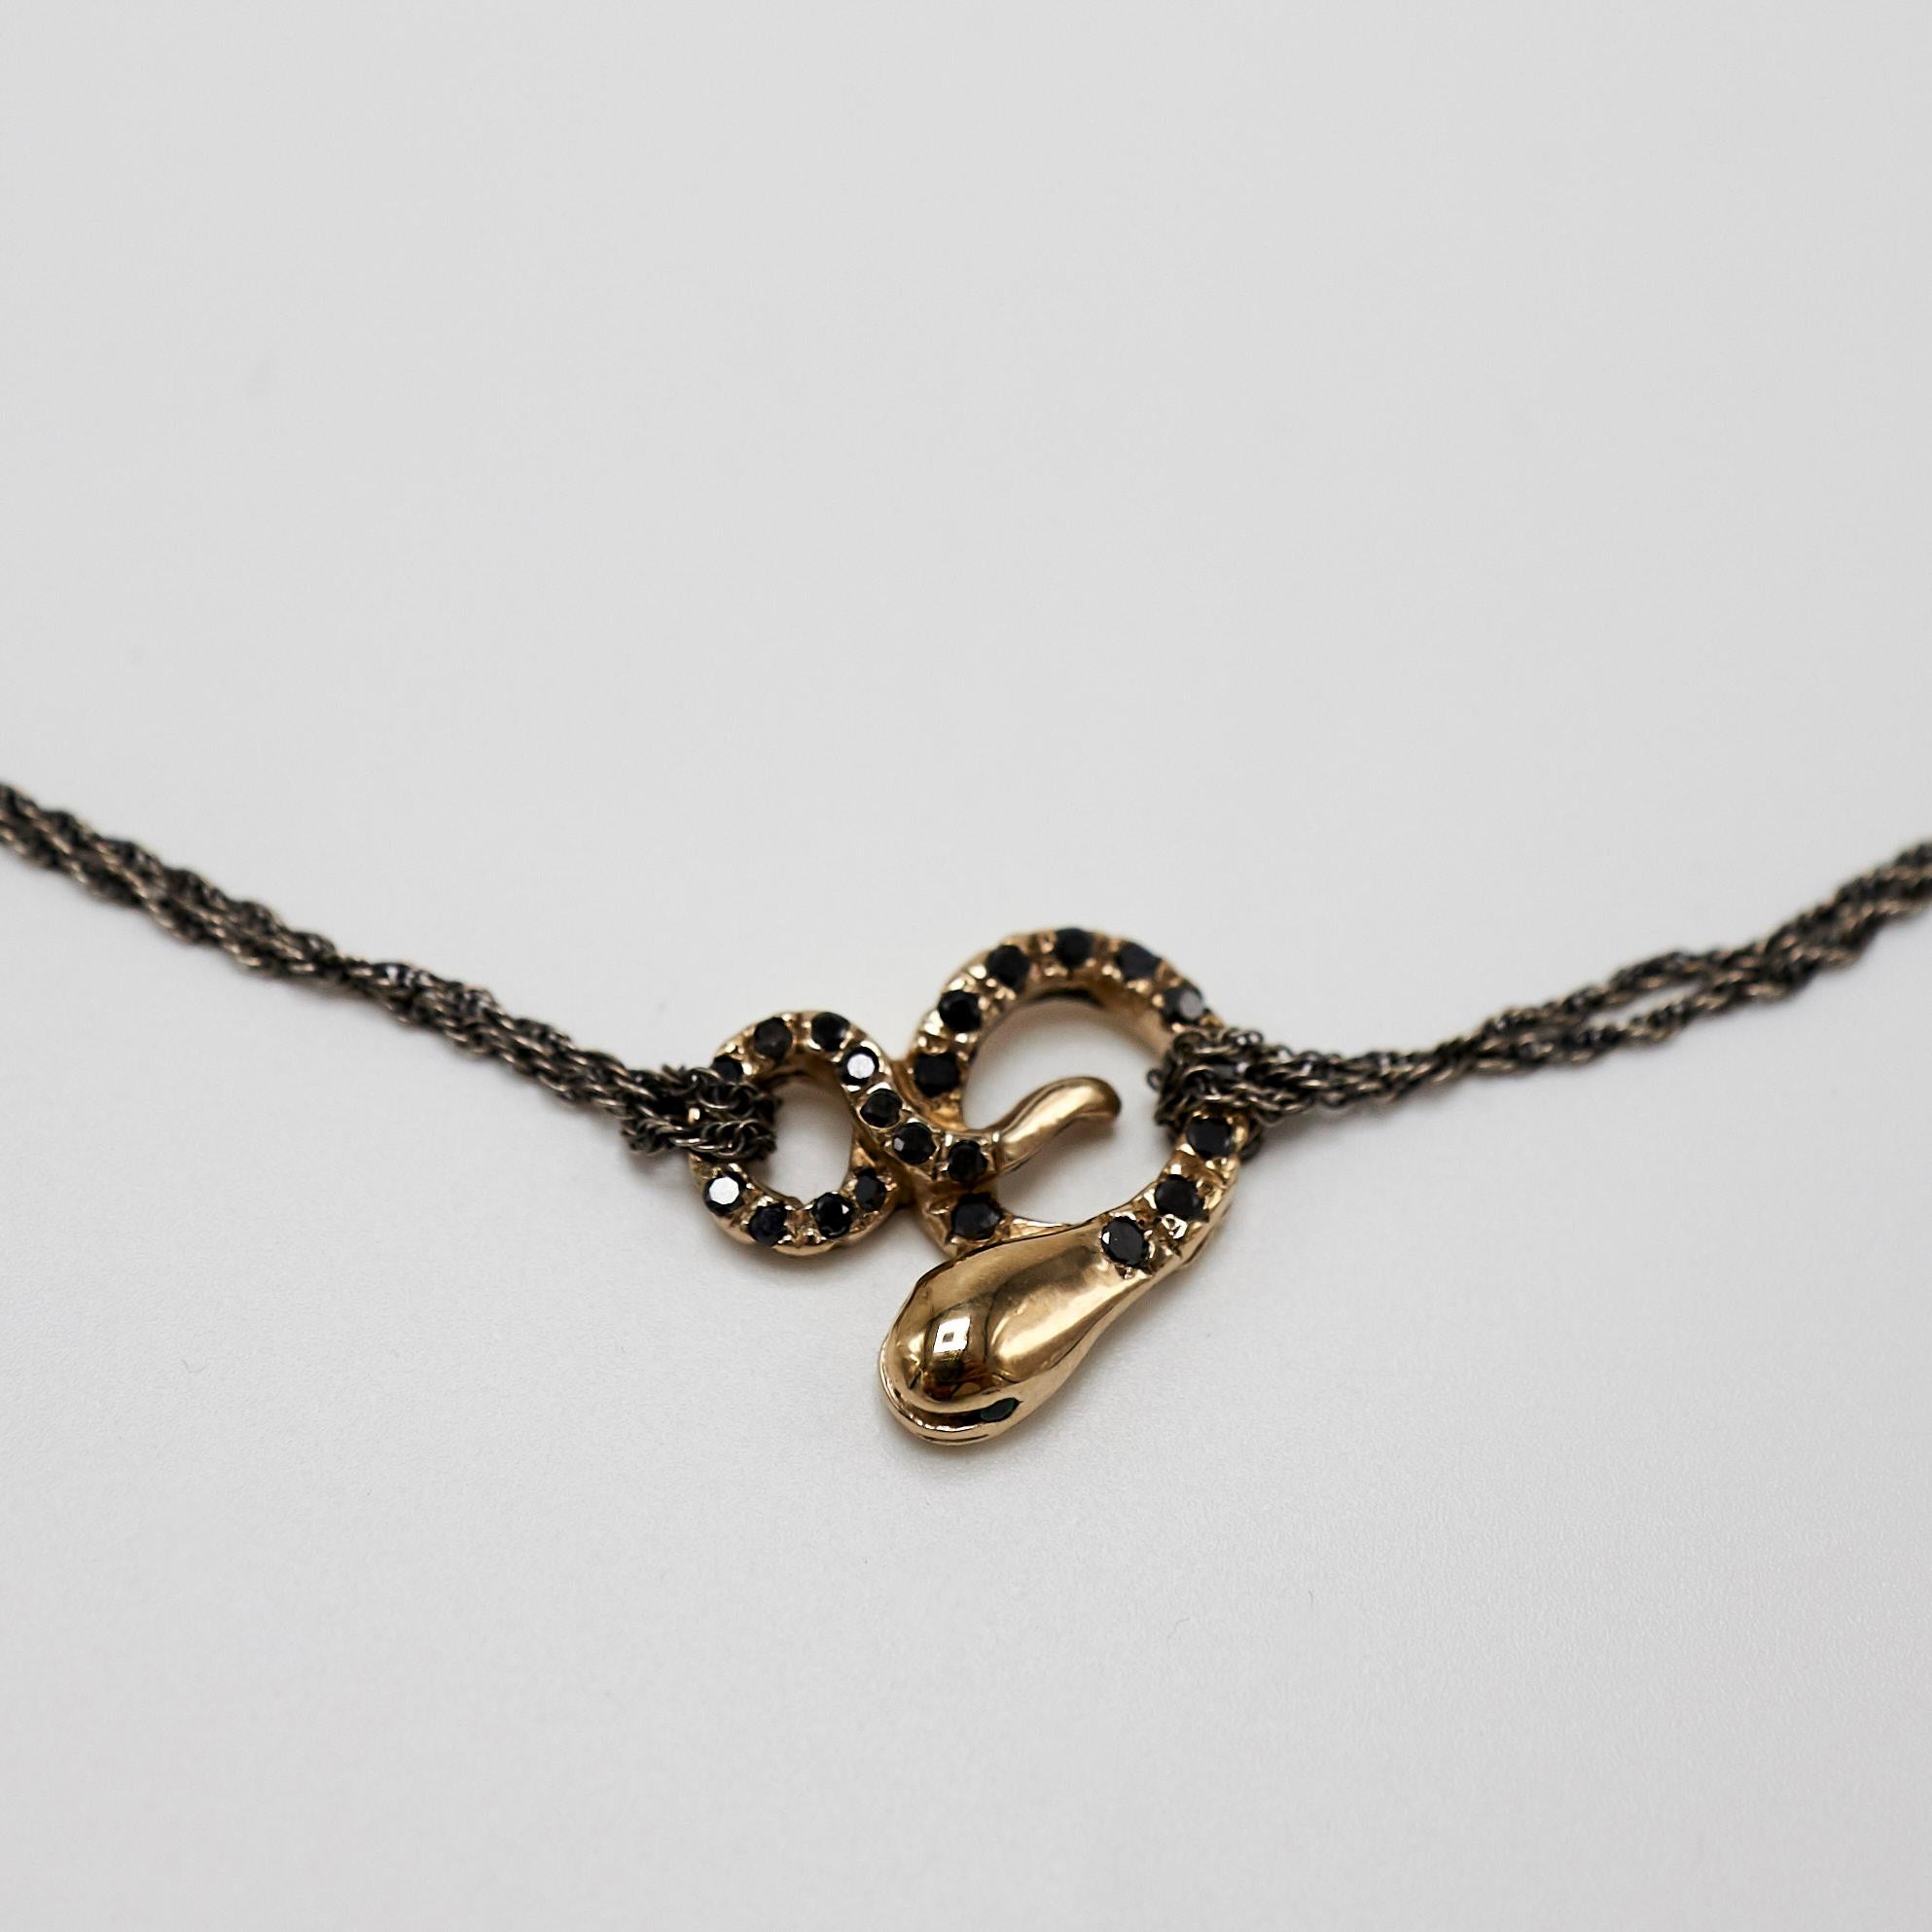 black snake necklace